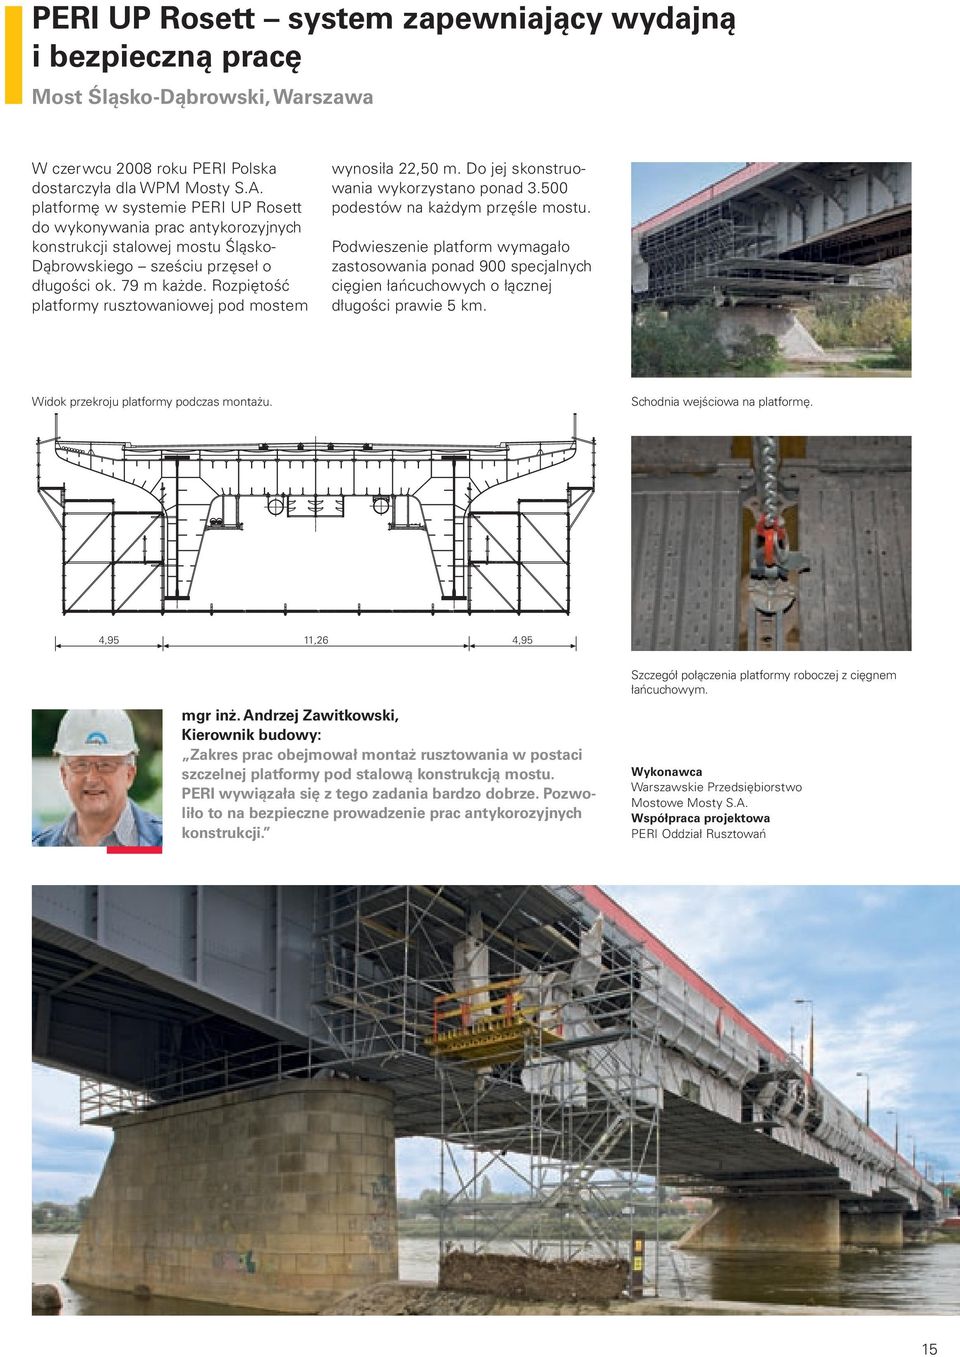 Rozpiętość platformy rusztowaniowej pod mostem wynosiła 22,50 m. Do jej skonstruowania wykorzystano ponad 3.500 podestów na każdym przęśle mostu.